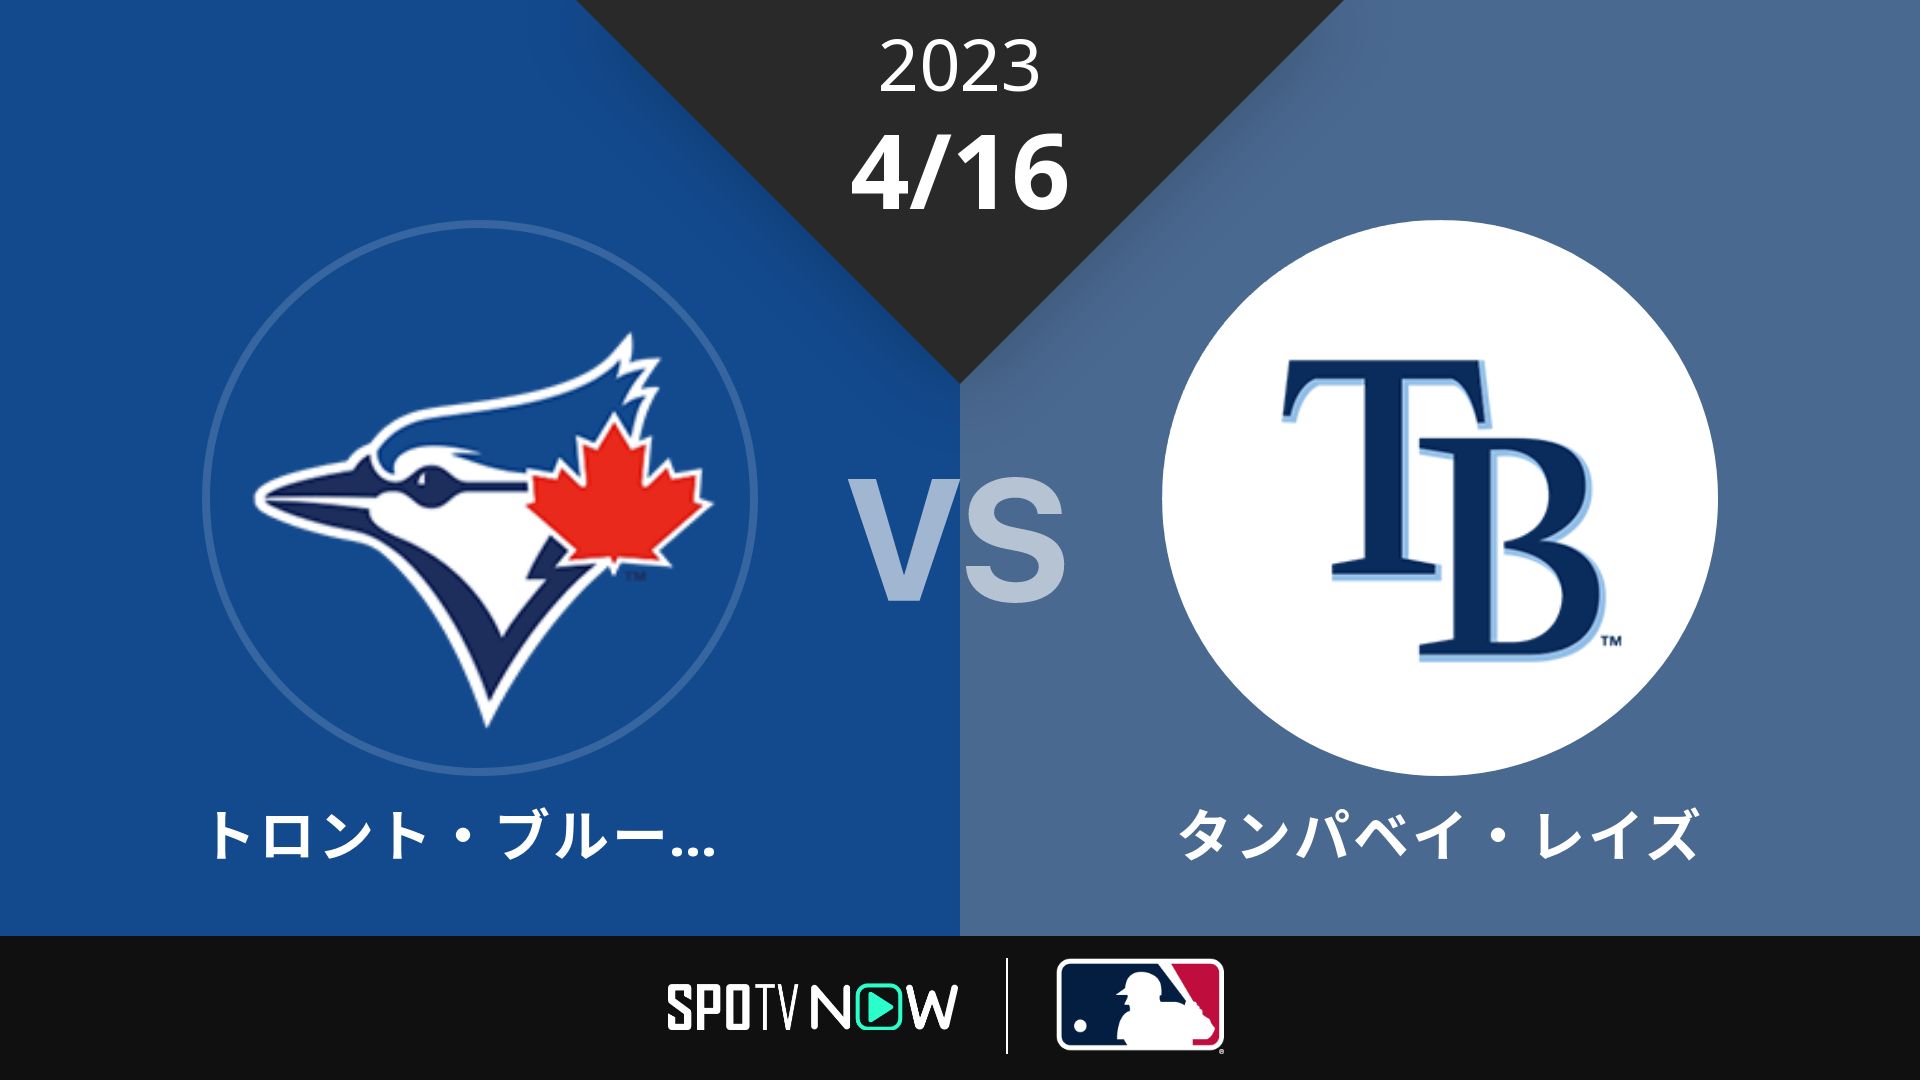 2023/4/16 ブルージェイズ vs レイズ [MLB]